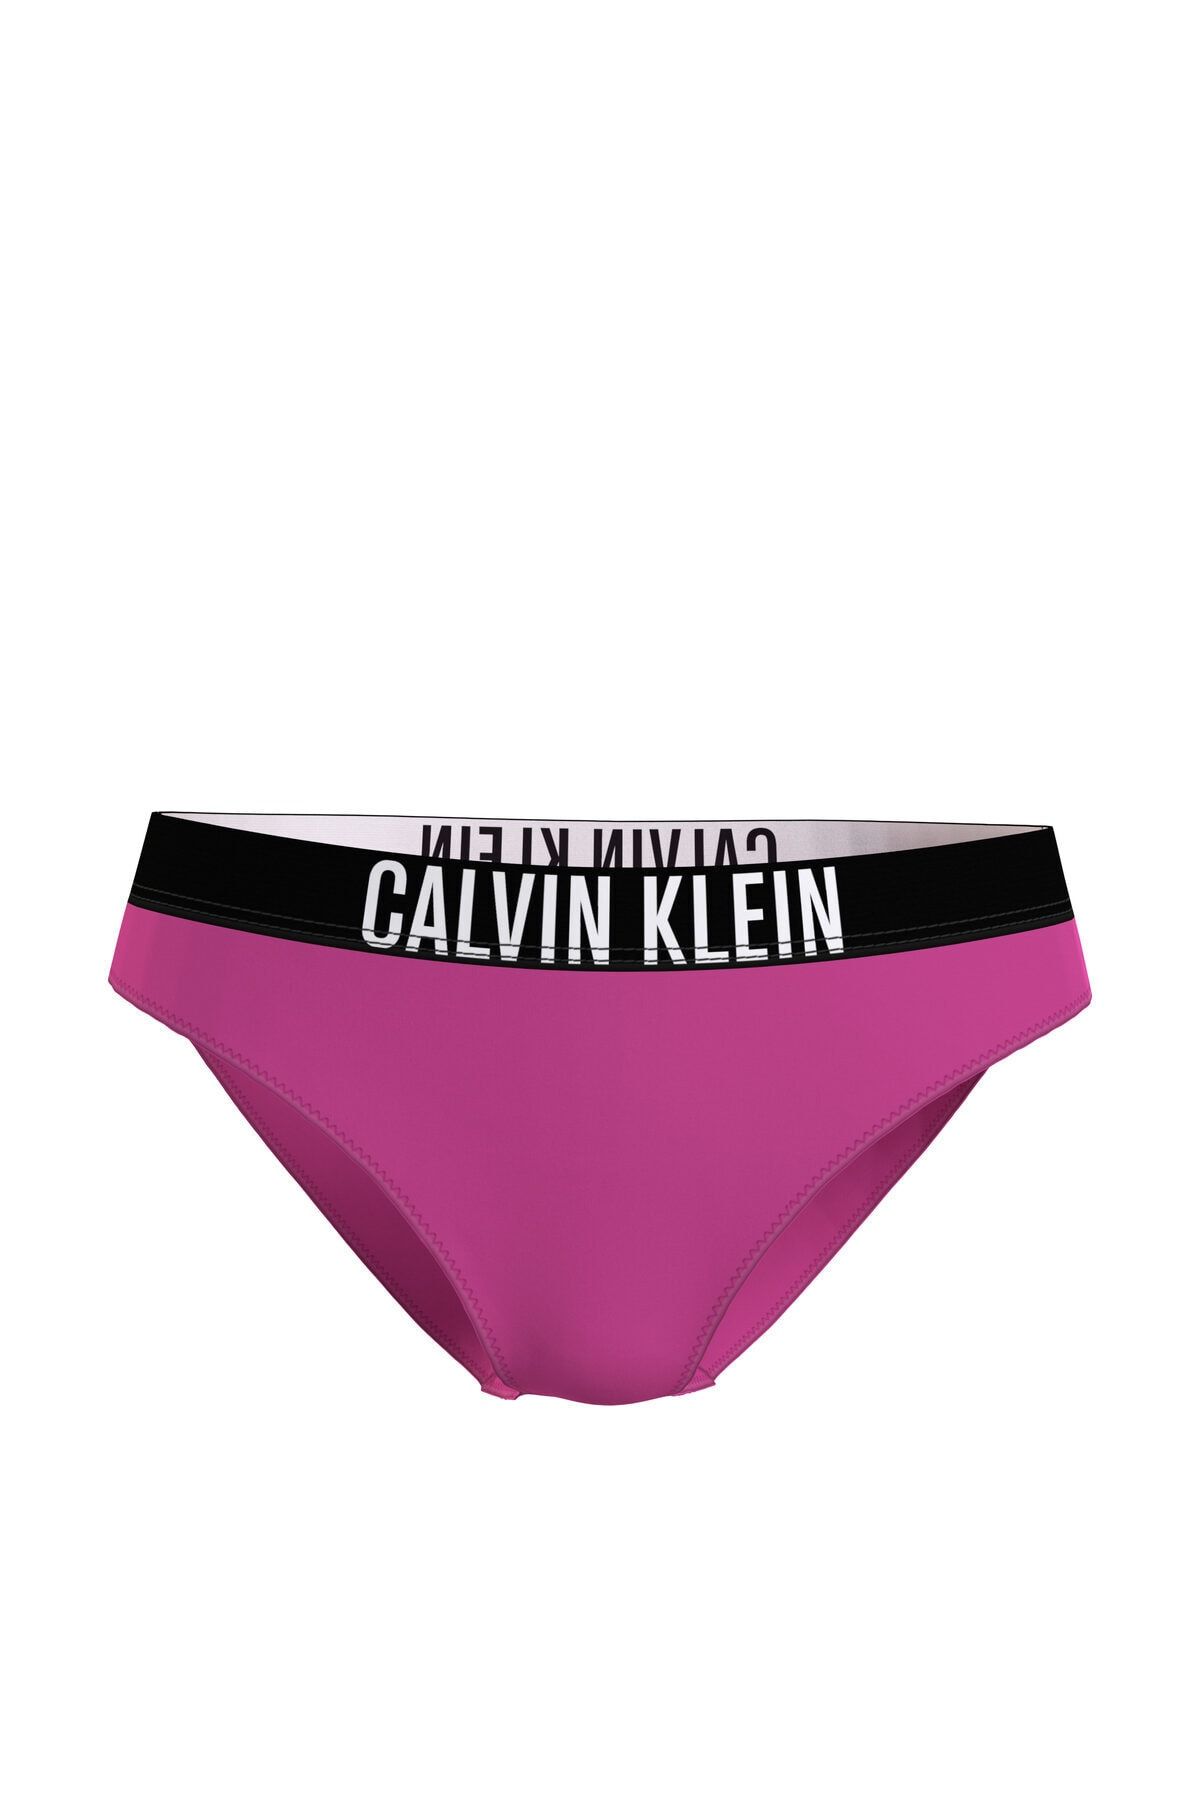 Calvin Klein Kadın Bikini Alt, L, Mor